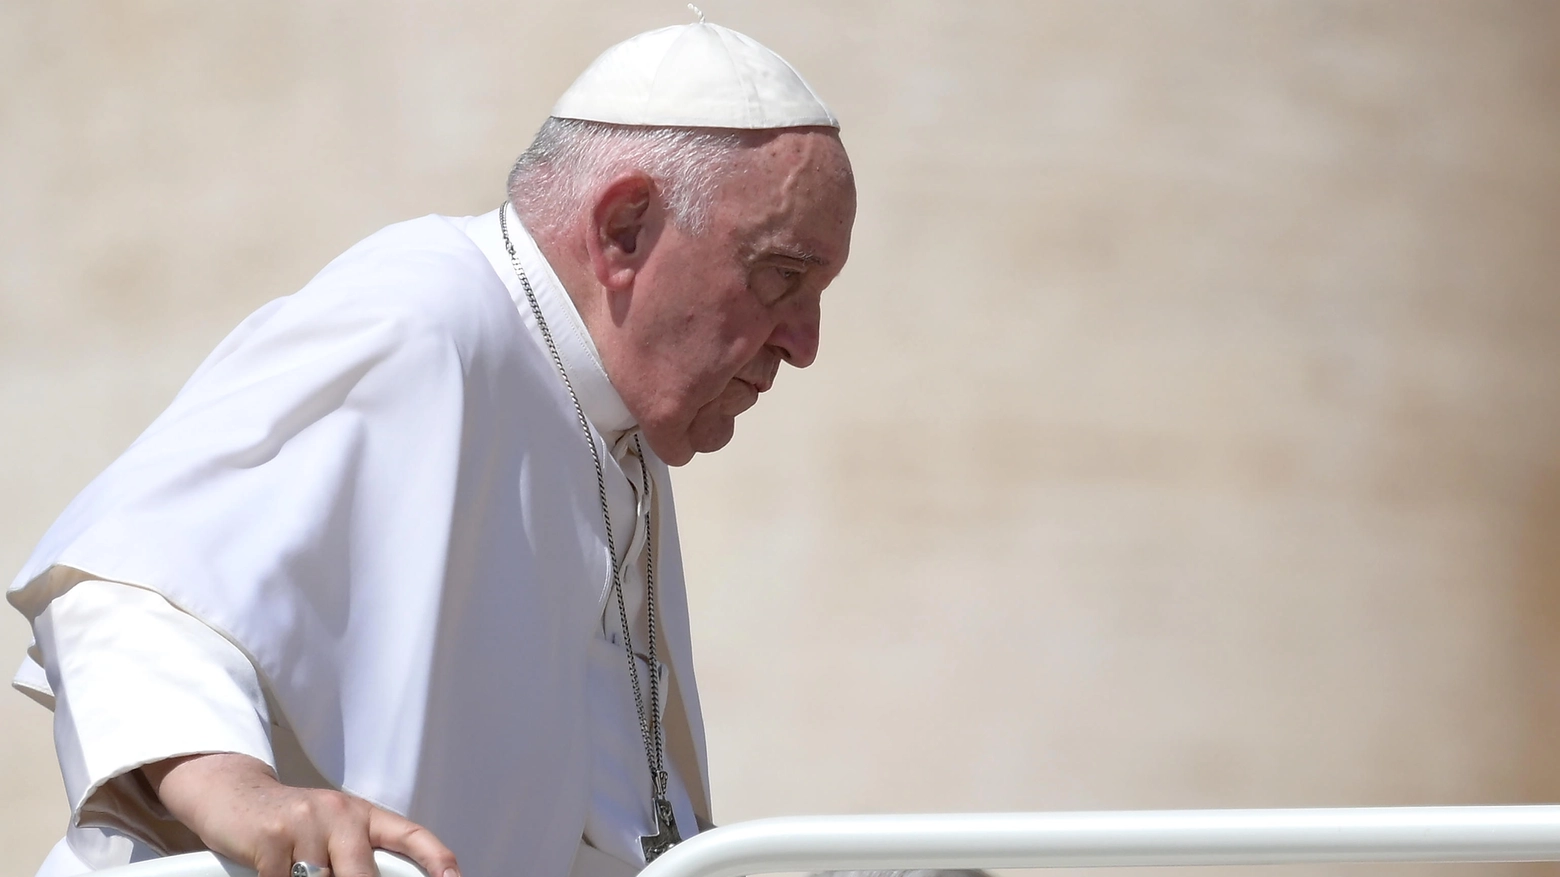 Il chirurgo Corcione spiega in cosa consiste l’intervento del Papa. “La convalescenza sarà lunga”
